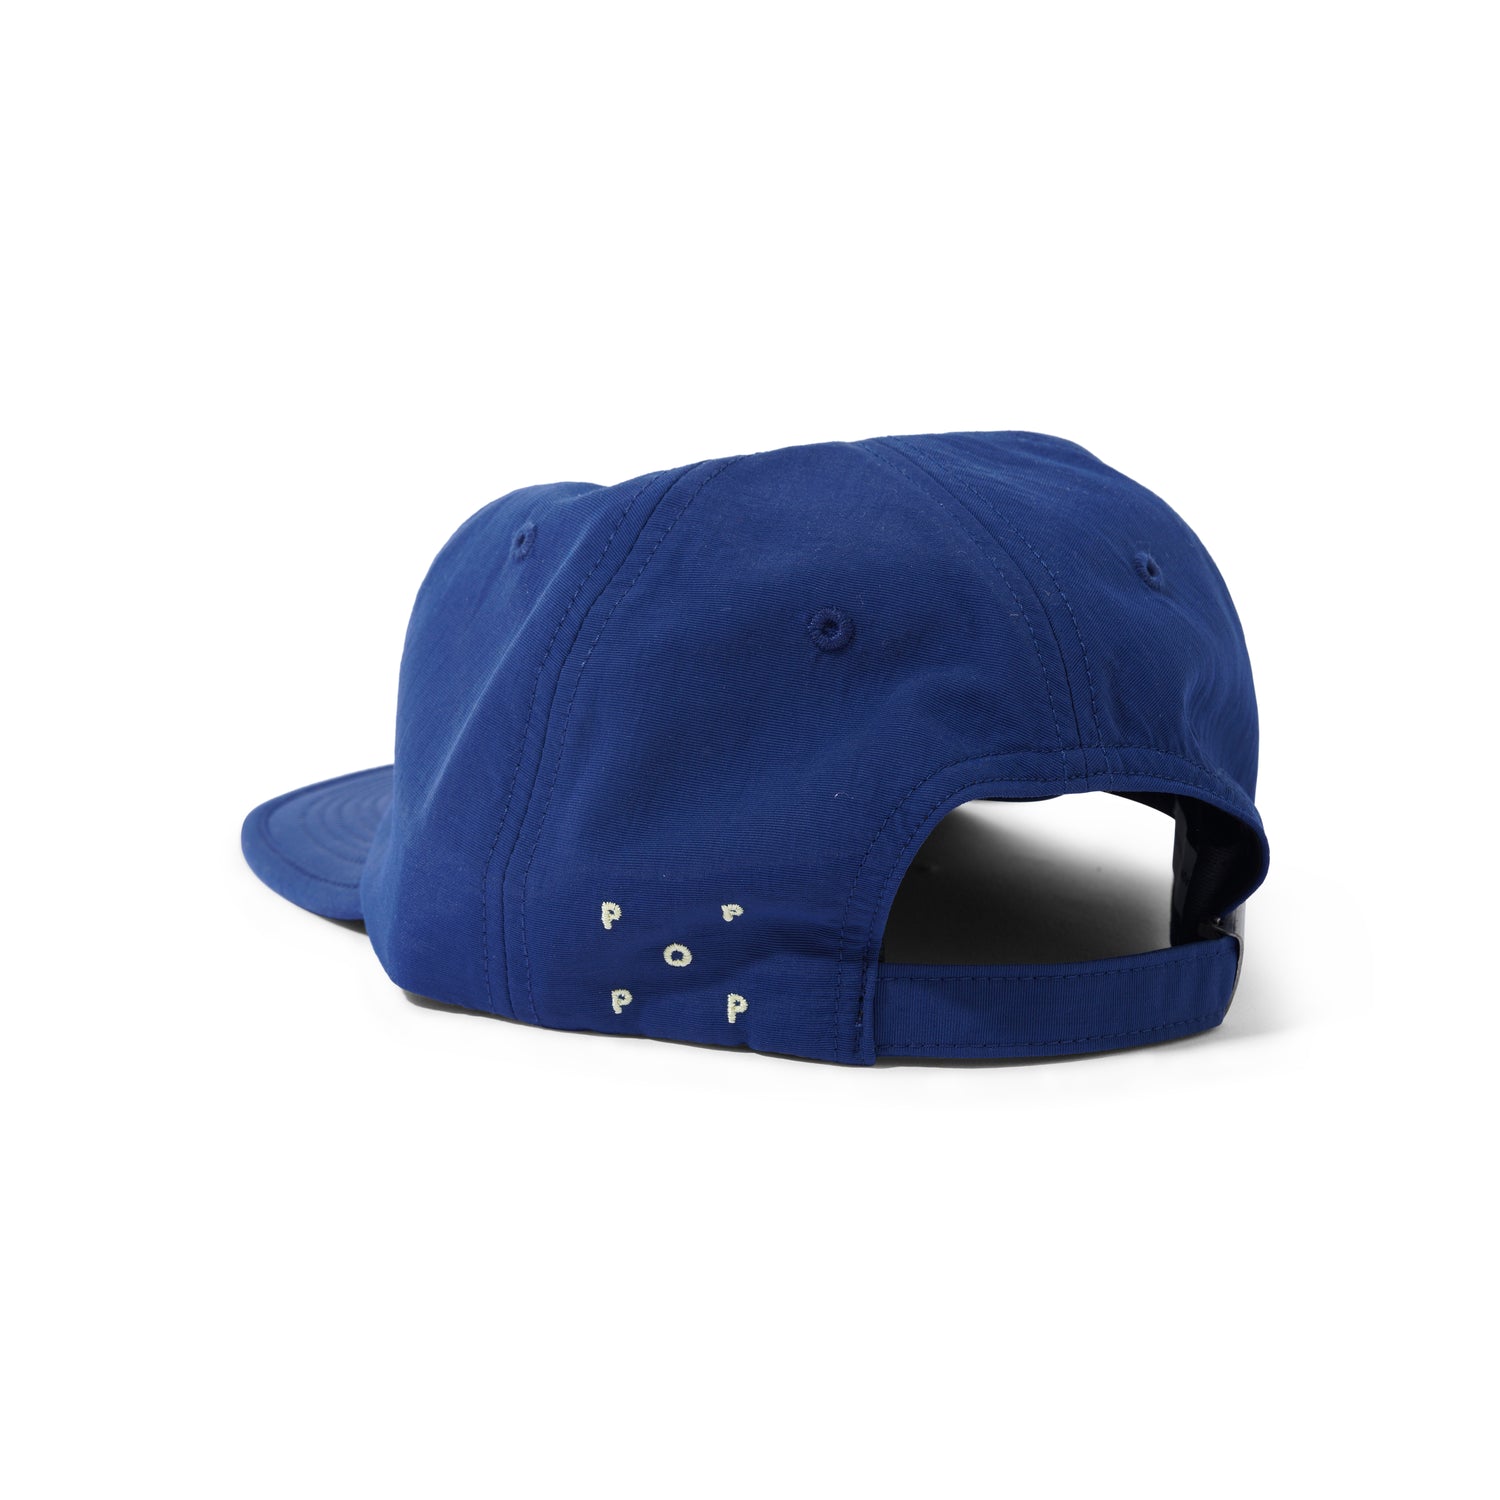 Flexfoam Seersucker Sixpanel Hat, Navy / Snapdragon